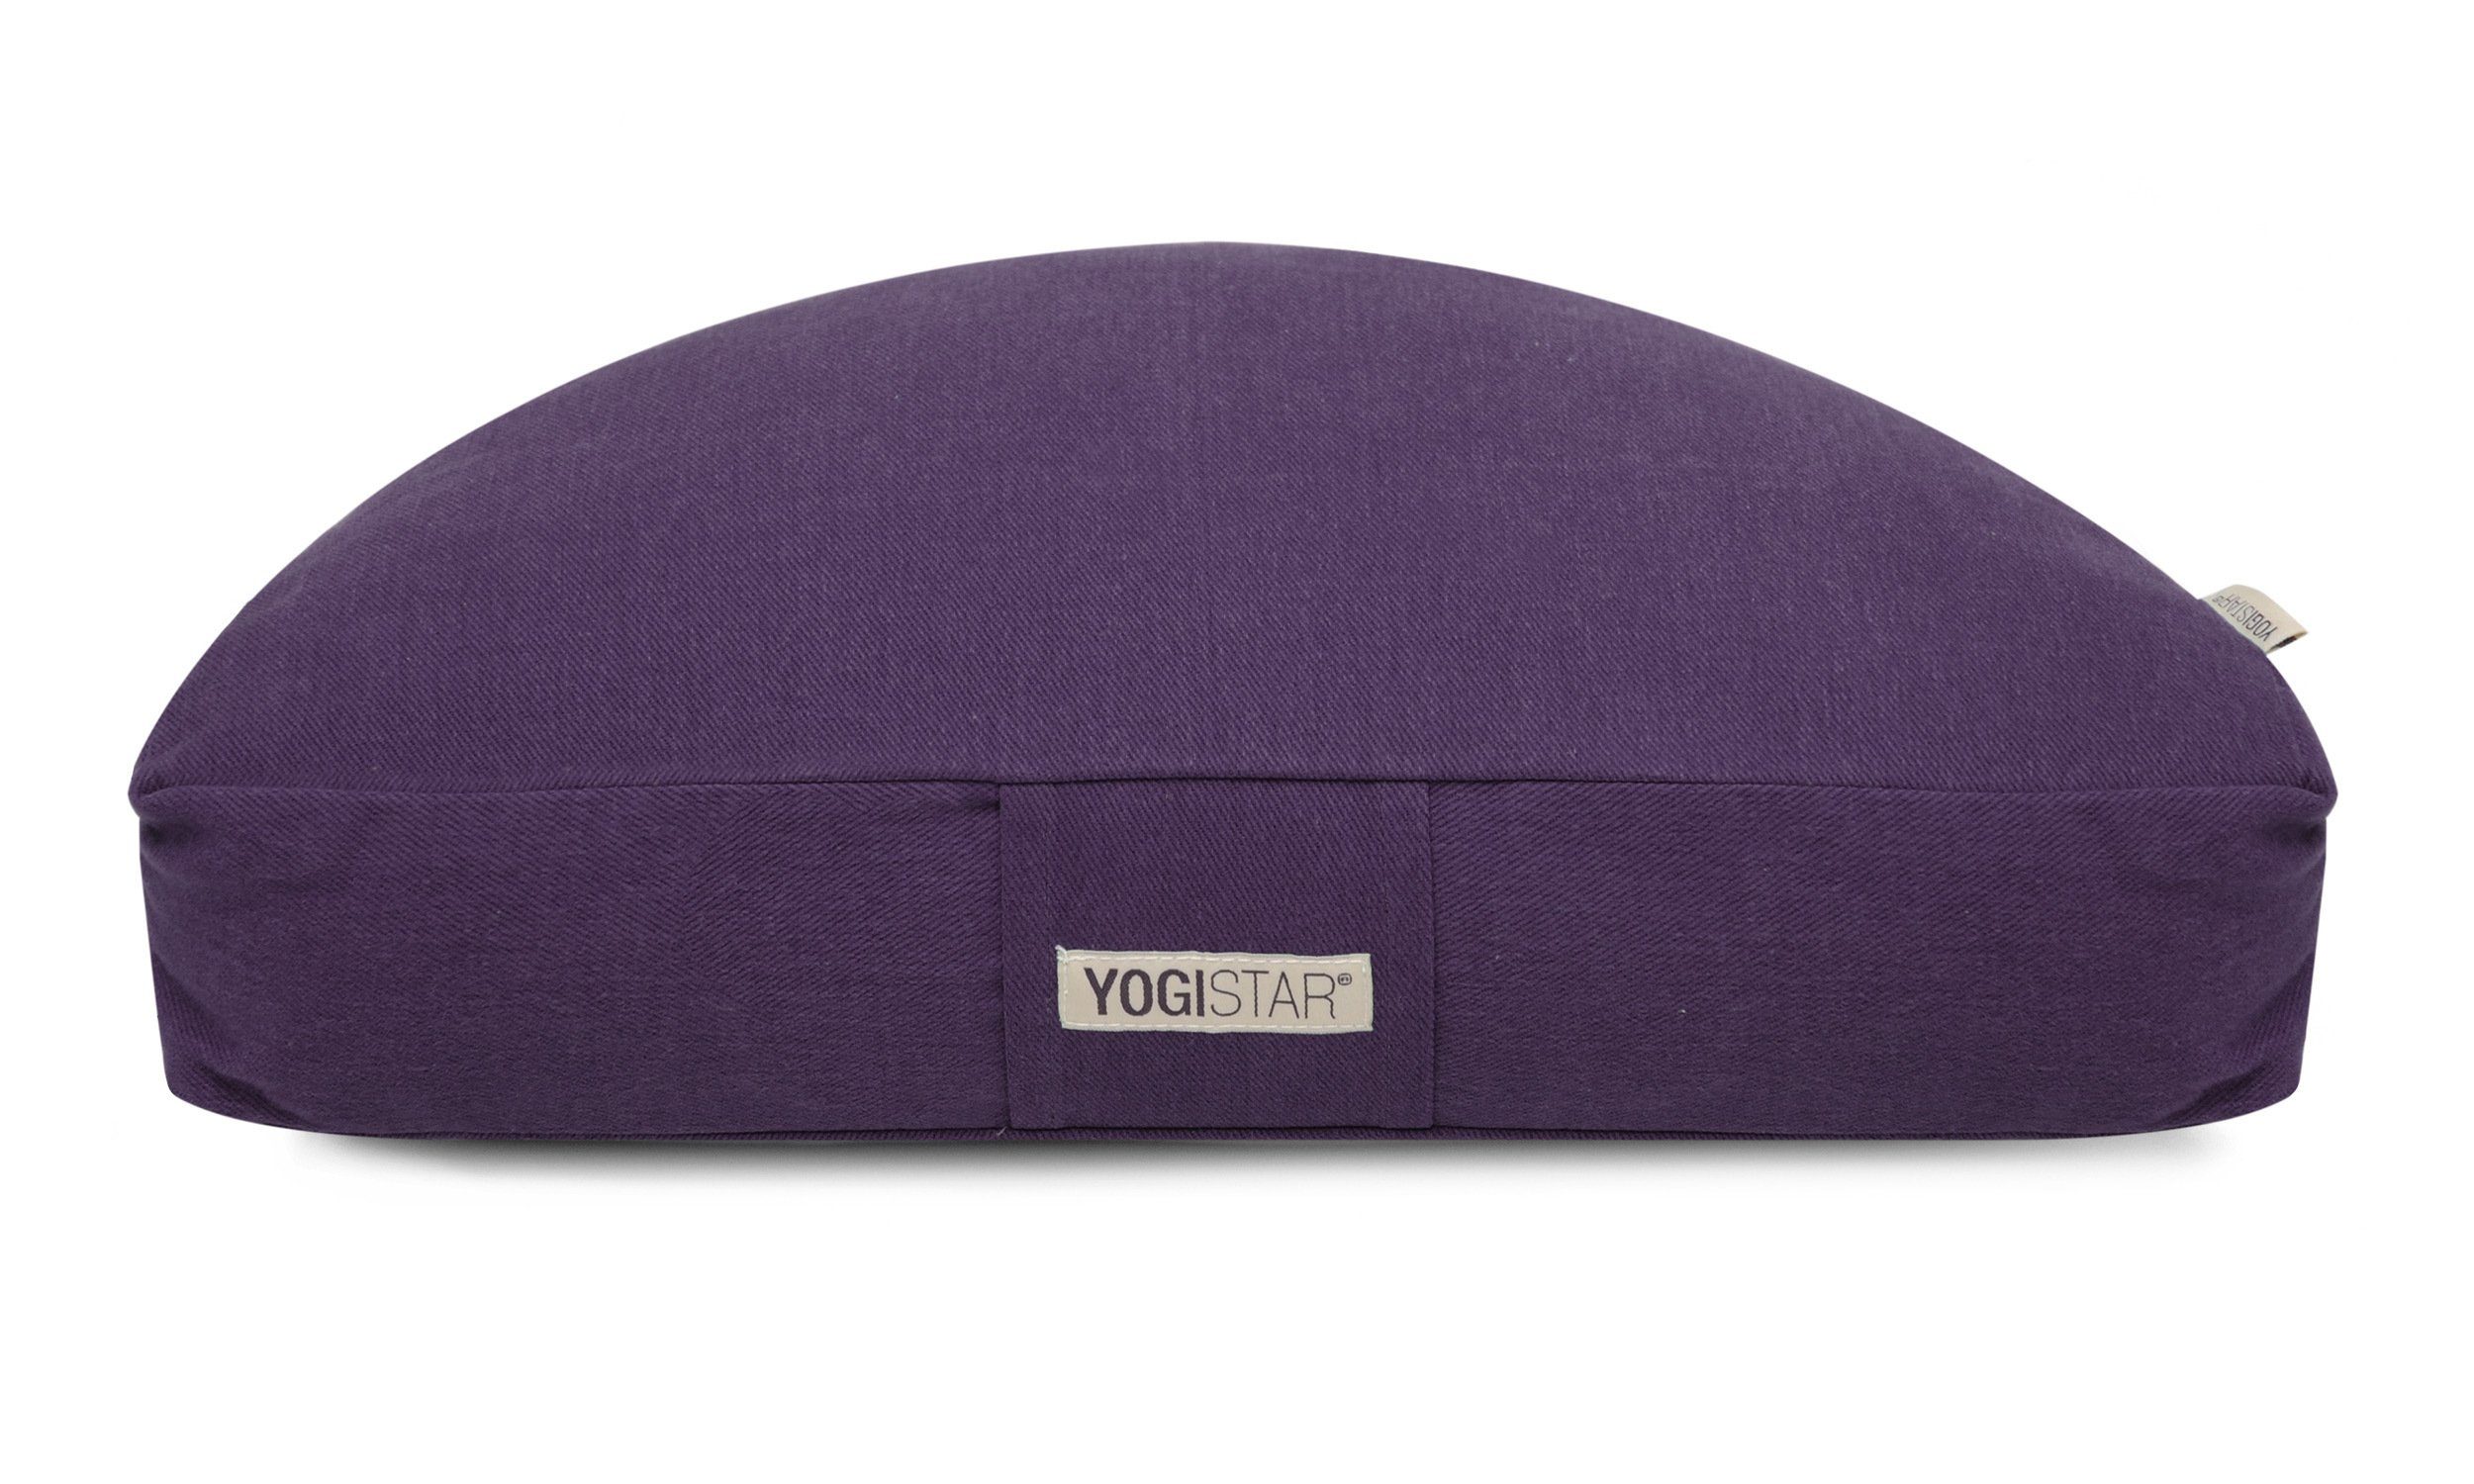 Yogistar Meditationskissen Meditationskissen Halfmoon, Hochwertiges Meditationskissen für einen stabilen und bequemen Sitz. violett